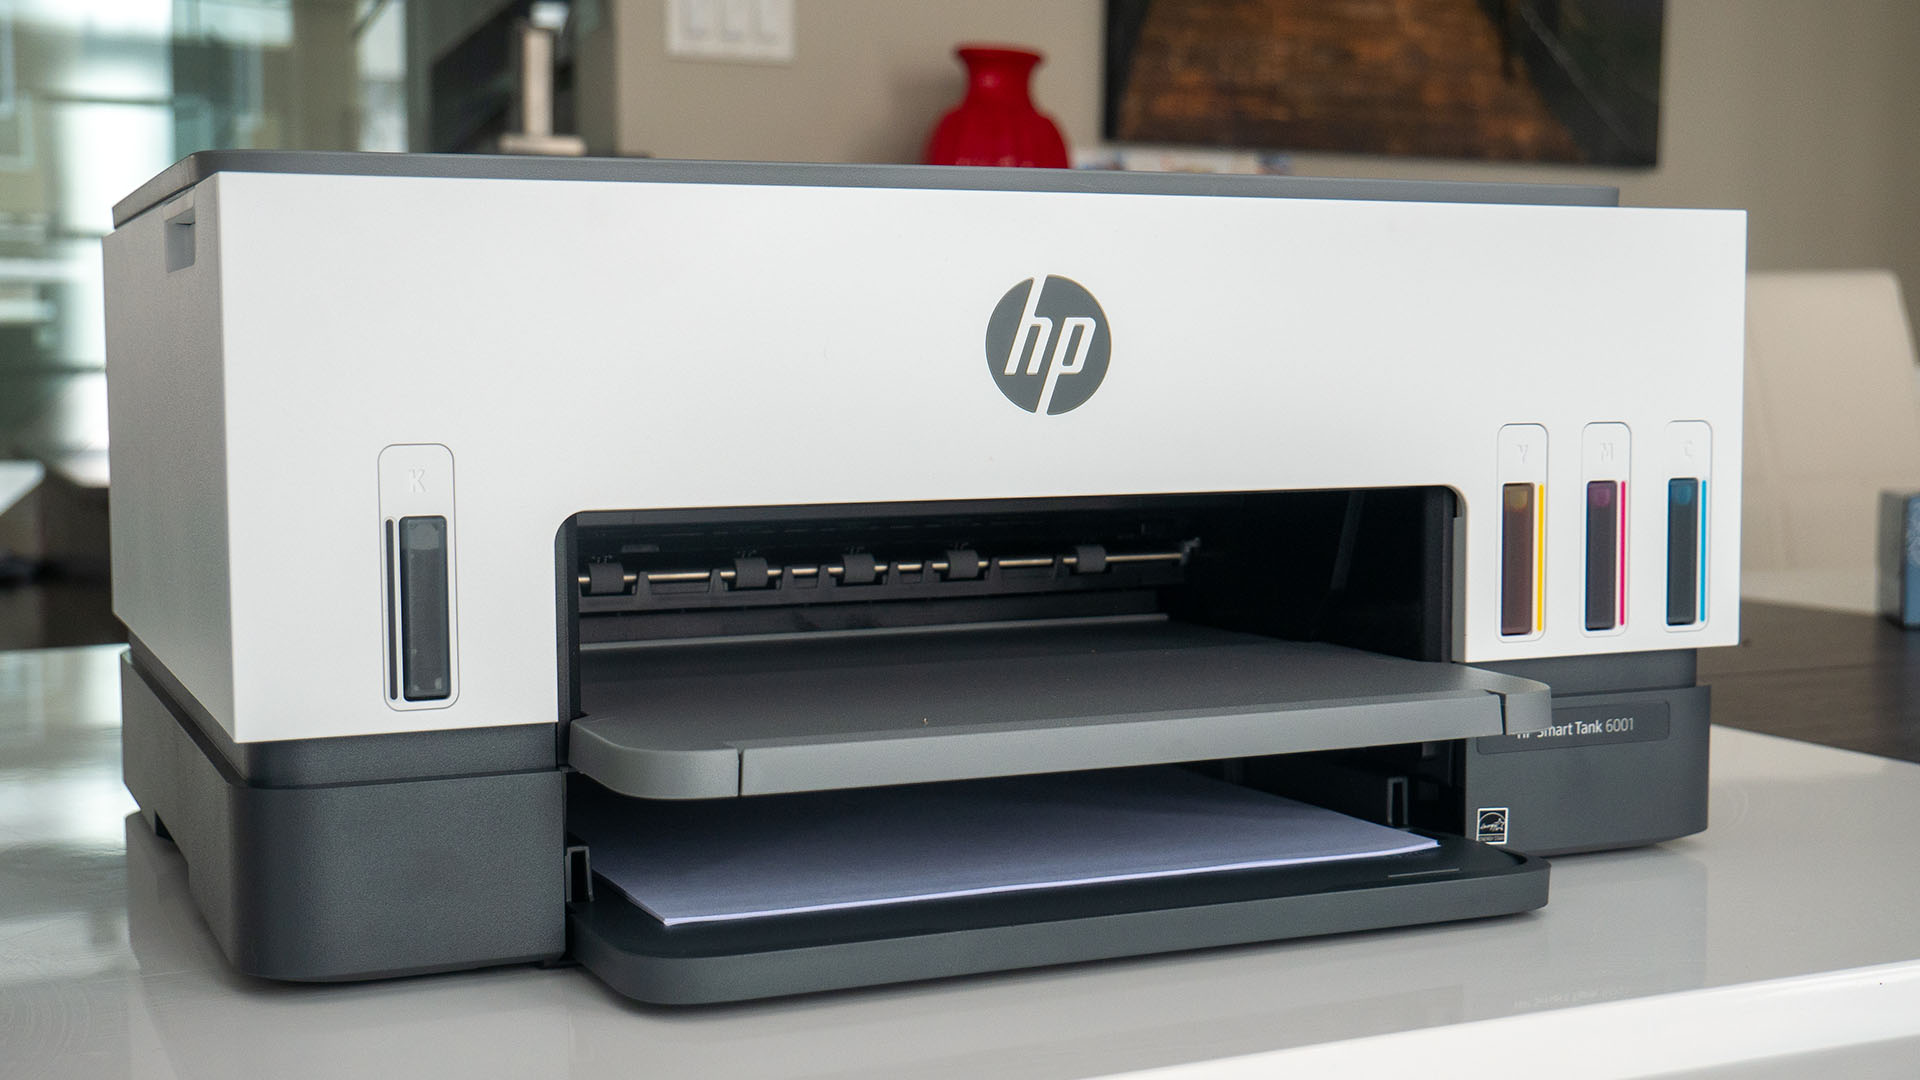 Évaluation de l'imprimante 6001 de HP - Blogue Best Buy